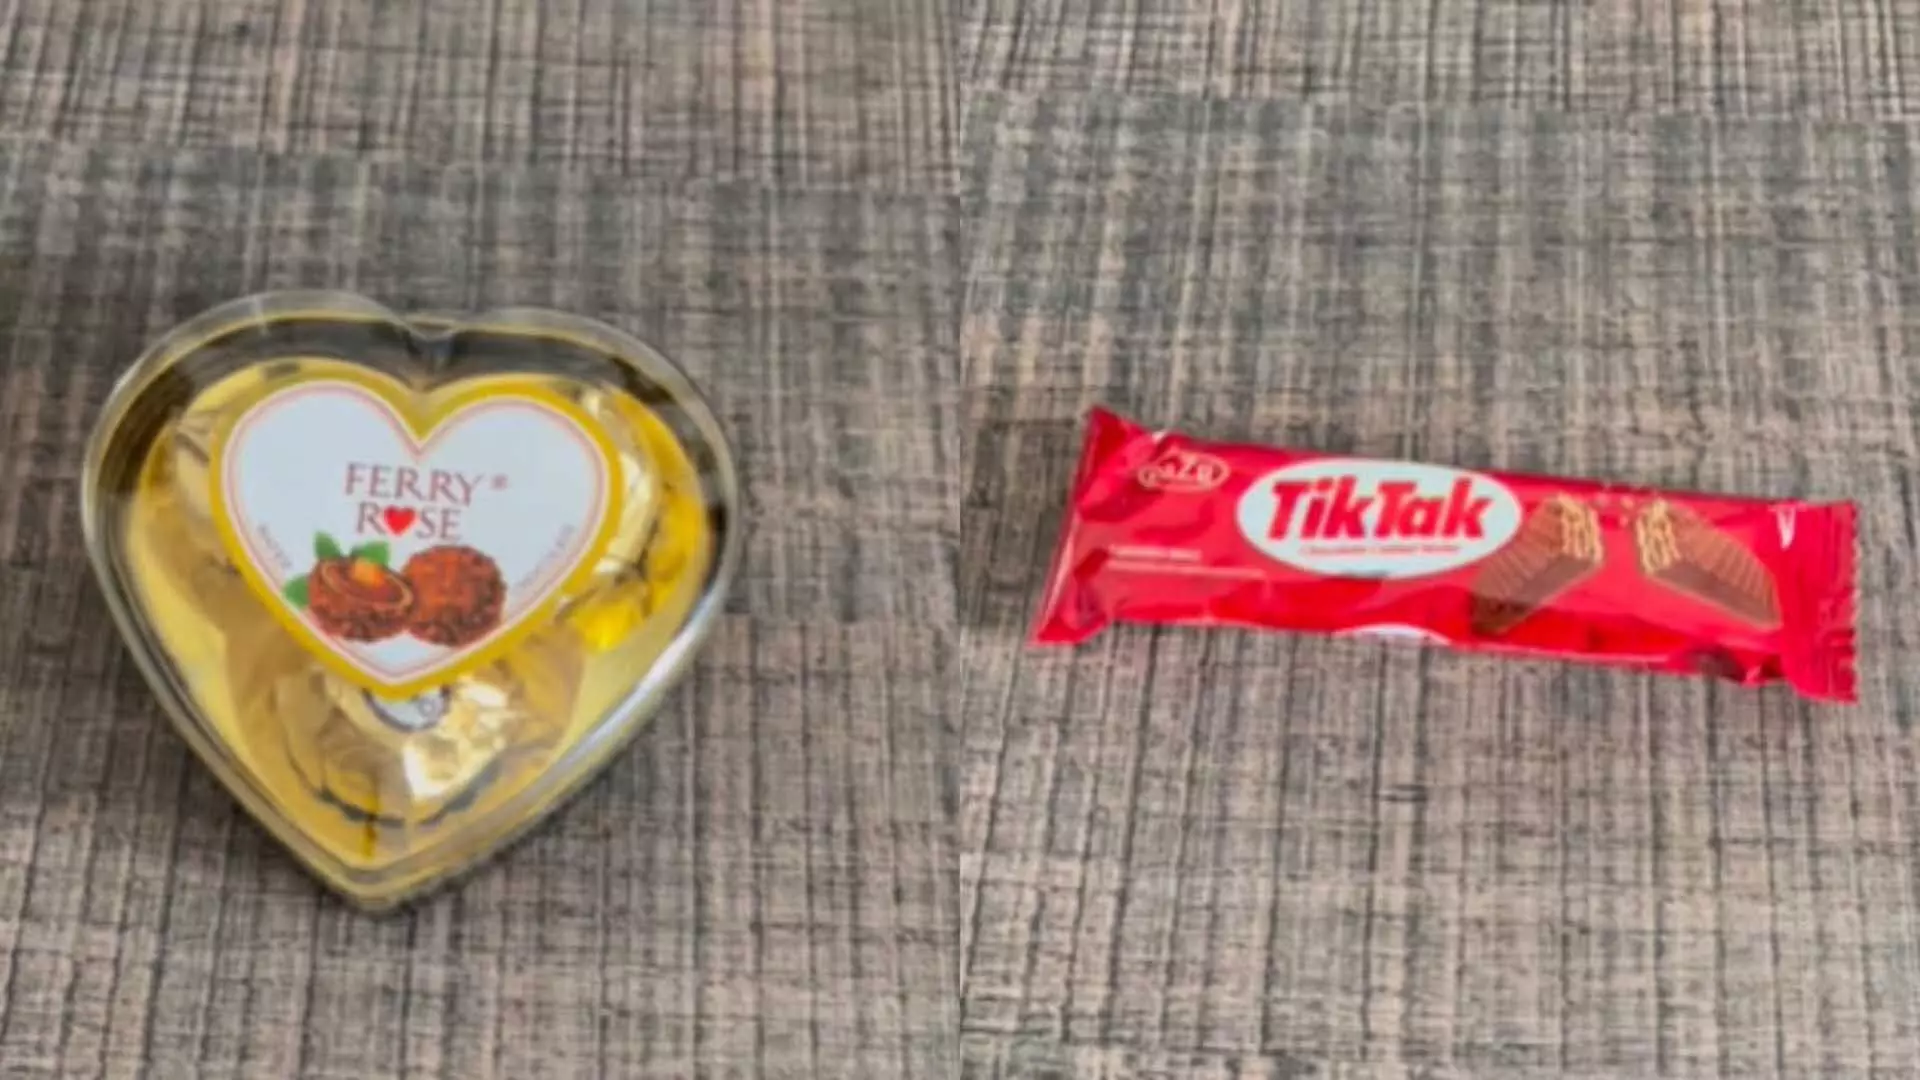 From Fiery से लेकर टिकटॉक, पाकिस्तानी चॉकलेट ब्रांड, मज़ेदार वीडियो...